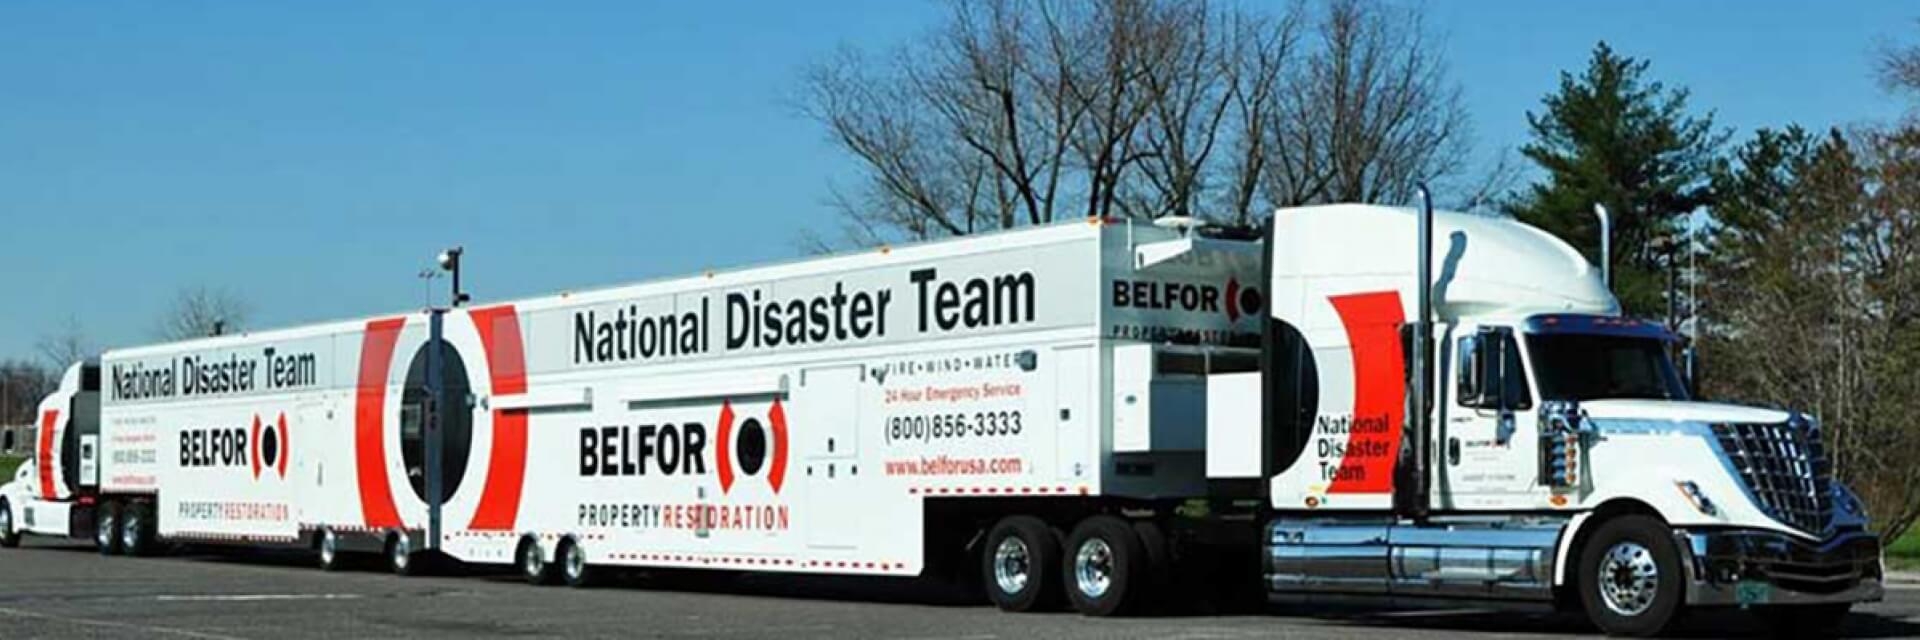 disaster-team-trucks